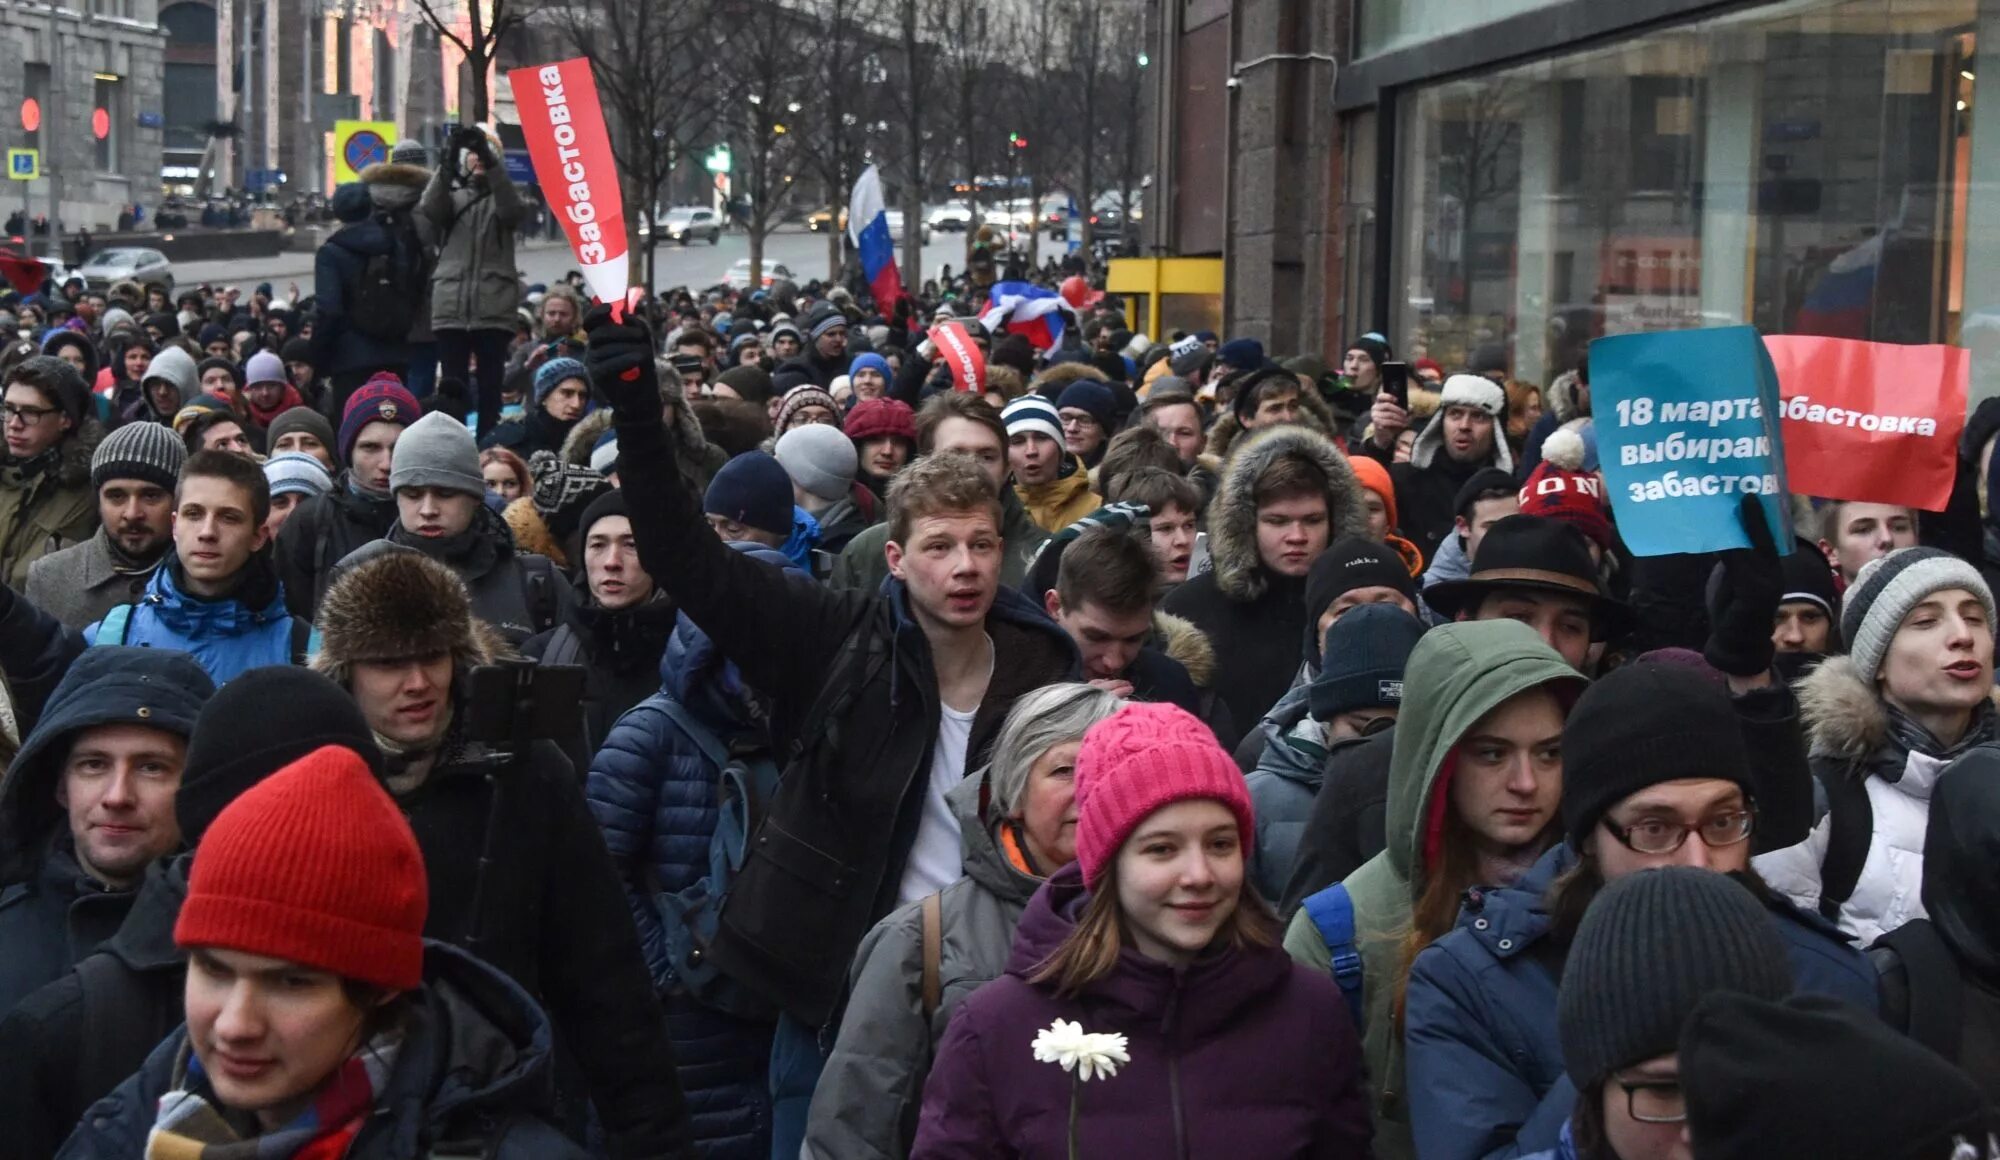 Школьники на митинге. Митинг подростков. Малыши на митинге. Подростки на митинге Навального. Дети на митинге навального